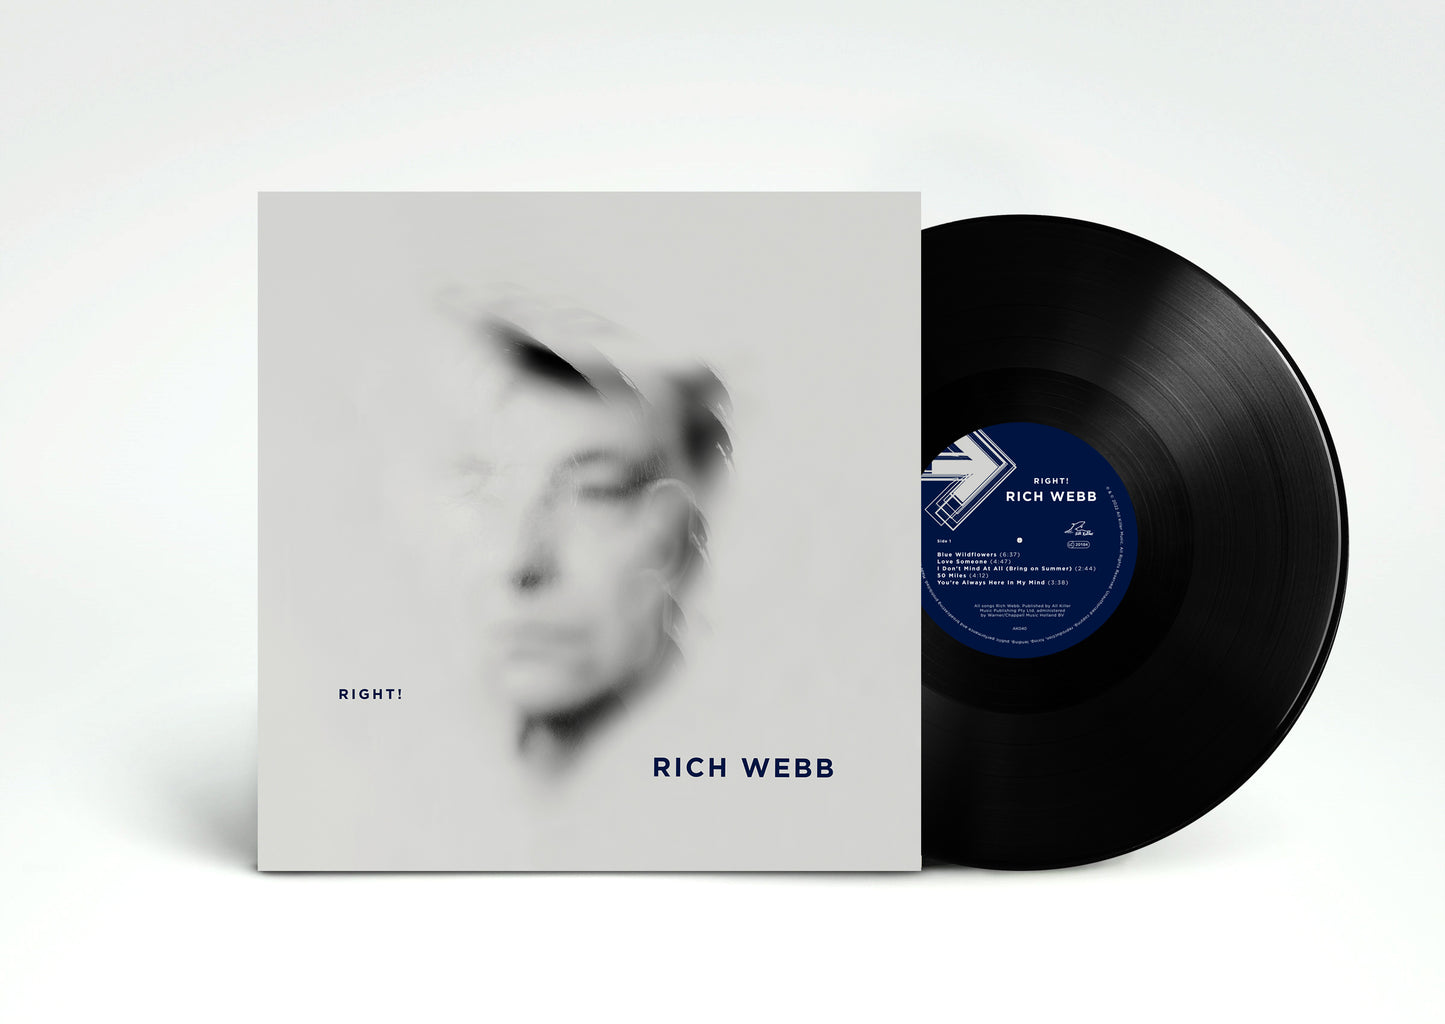 RICH WEBB - RIGHT! vinyl album